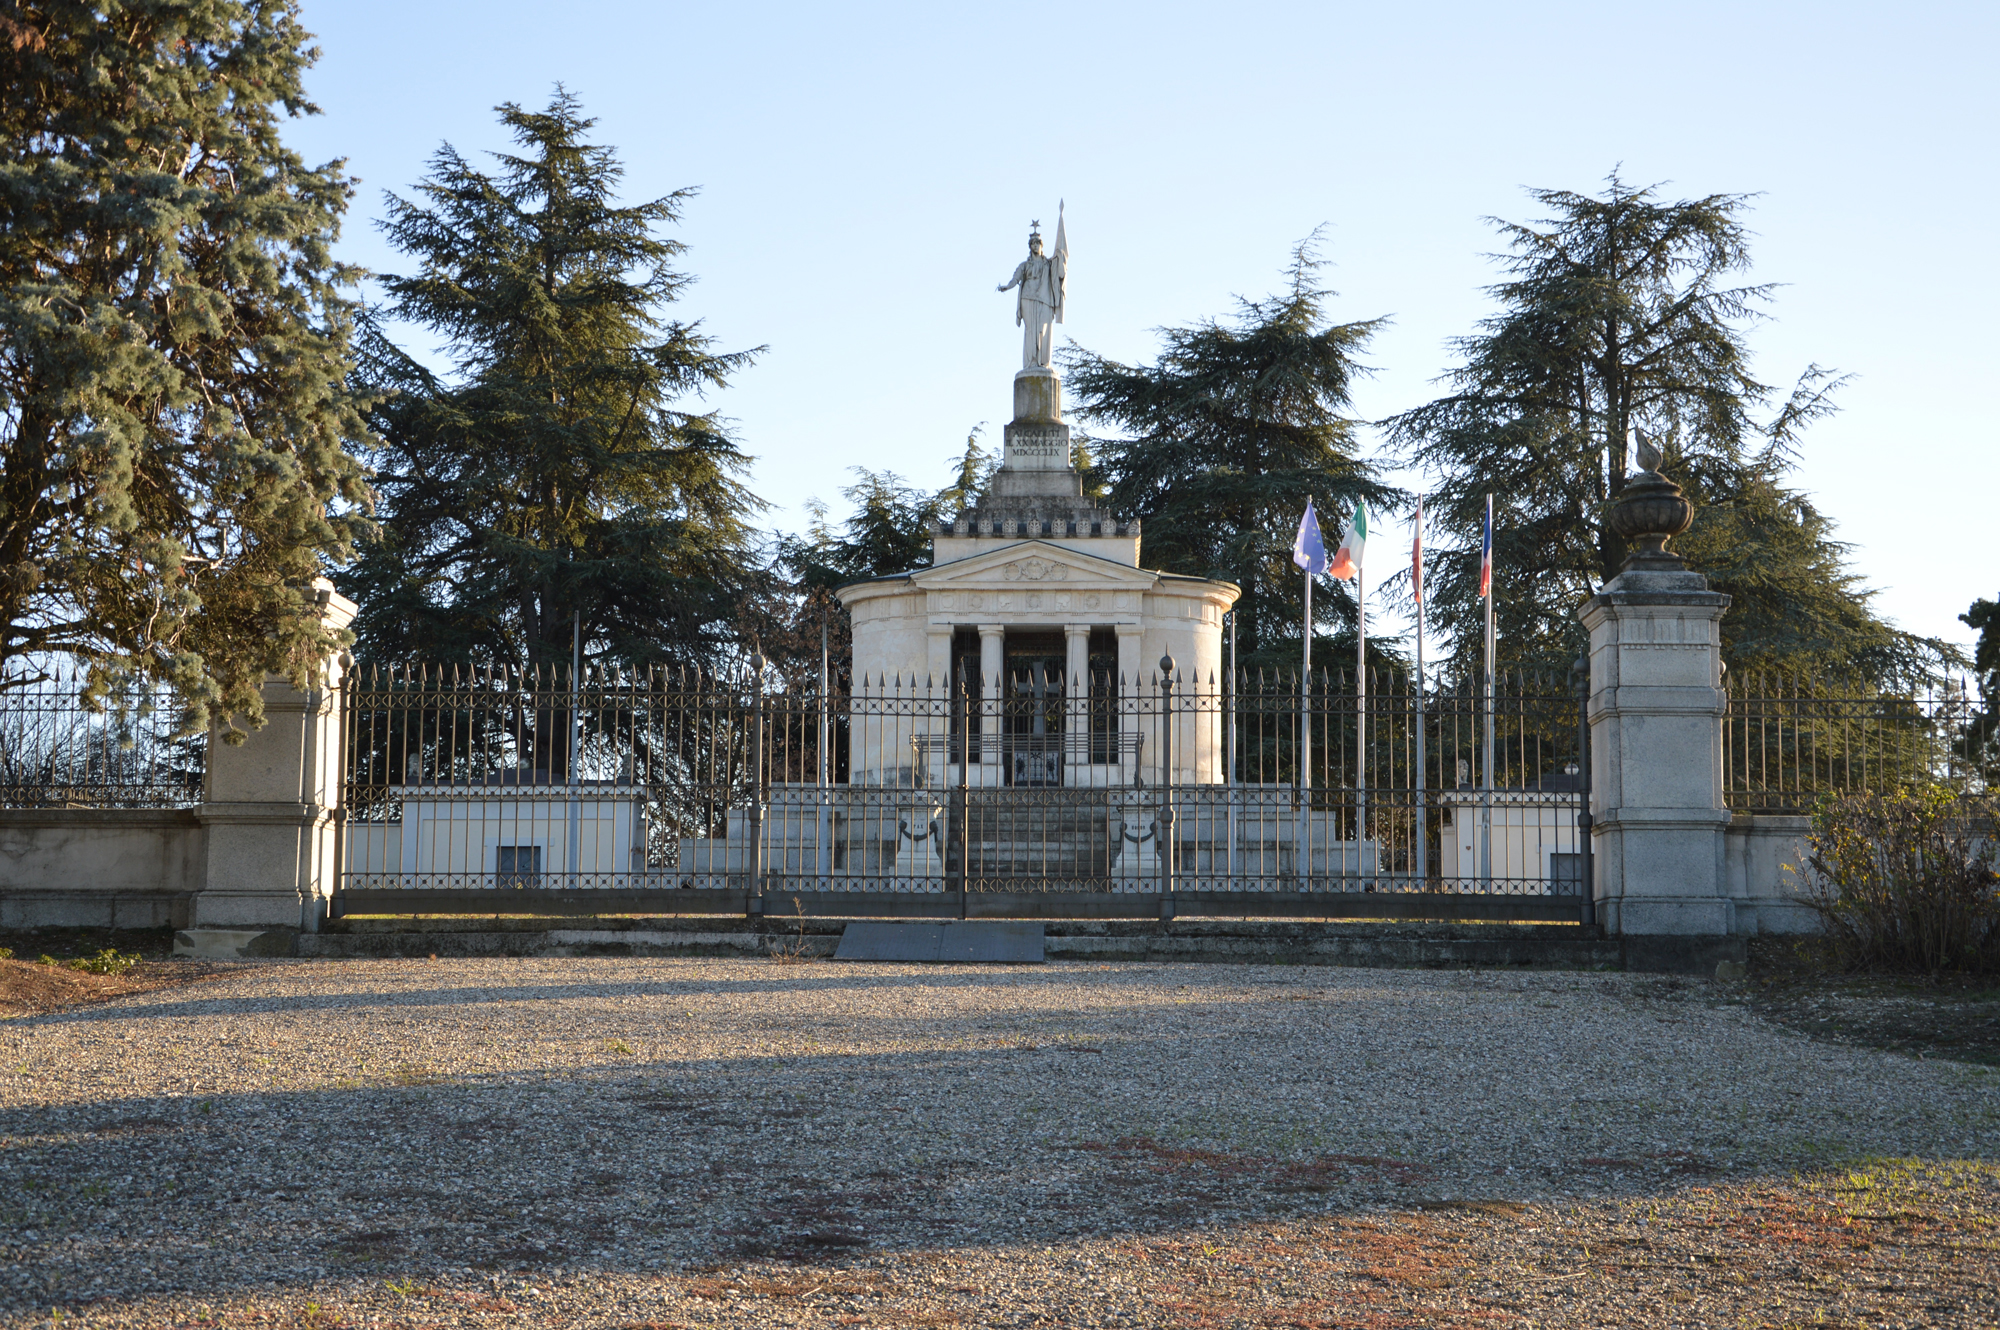 Cimitero vecchio e Monumento ossario (cimitero, e tempietto) - Montebello della Battaglia (PV) 